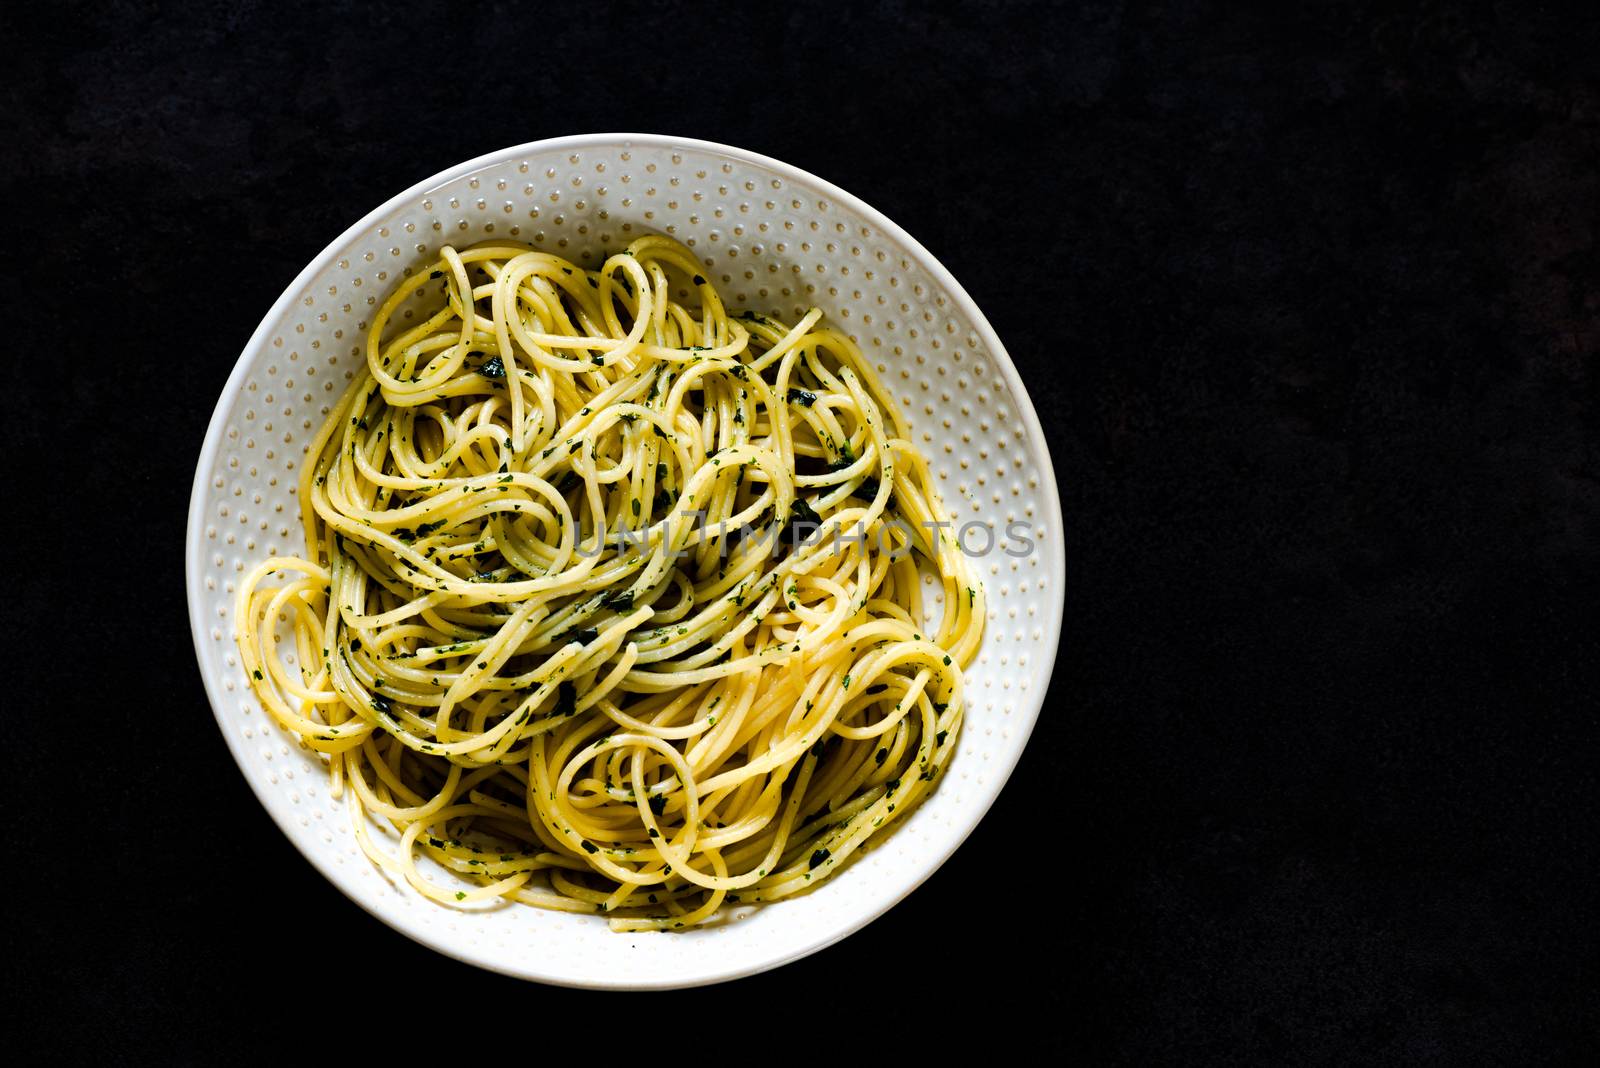 spaghetti pasta in a bowl by Nanisimova